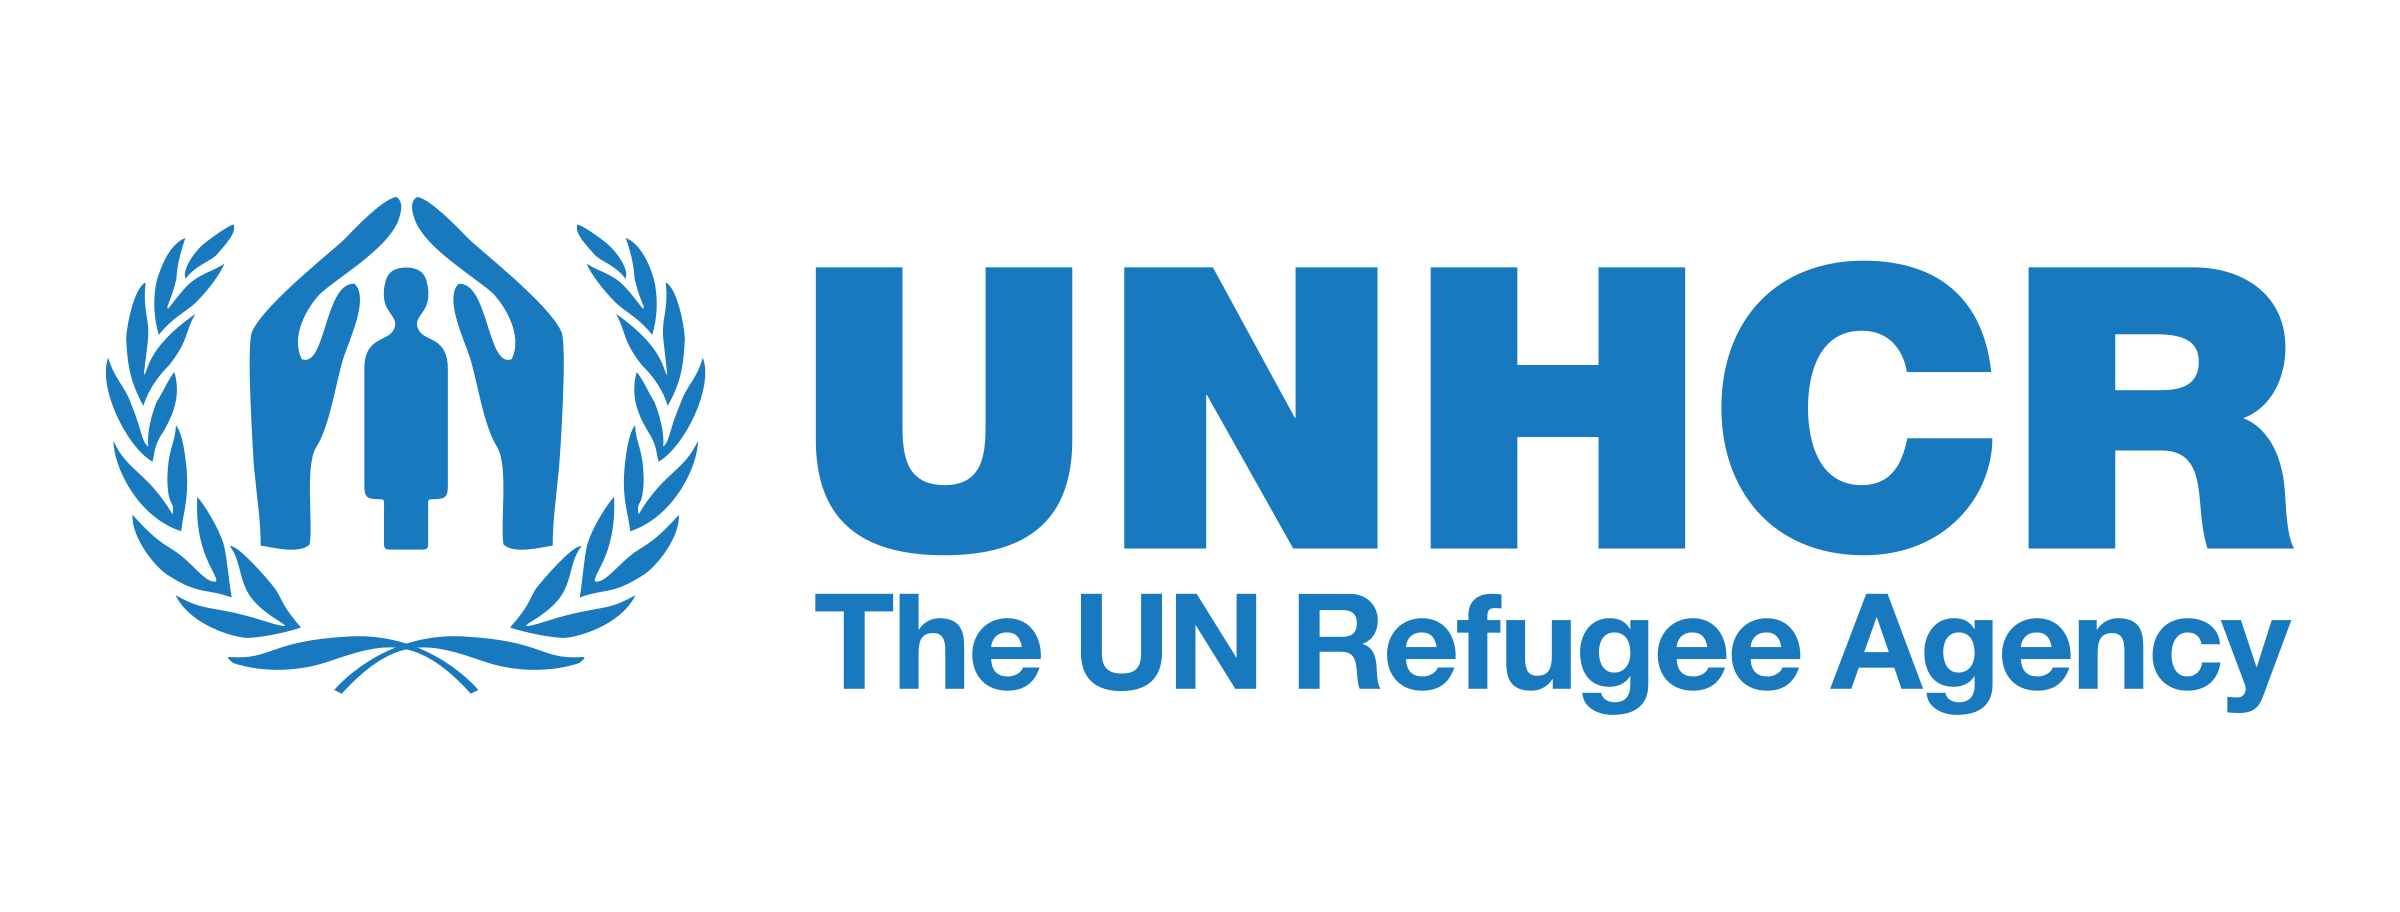 UNHCR - The UN Agency for Refugees